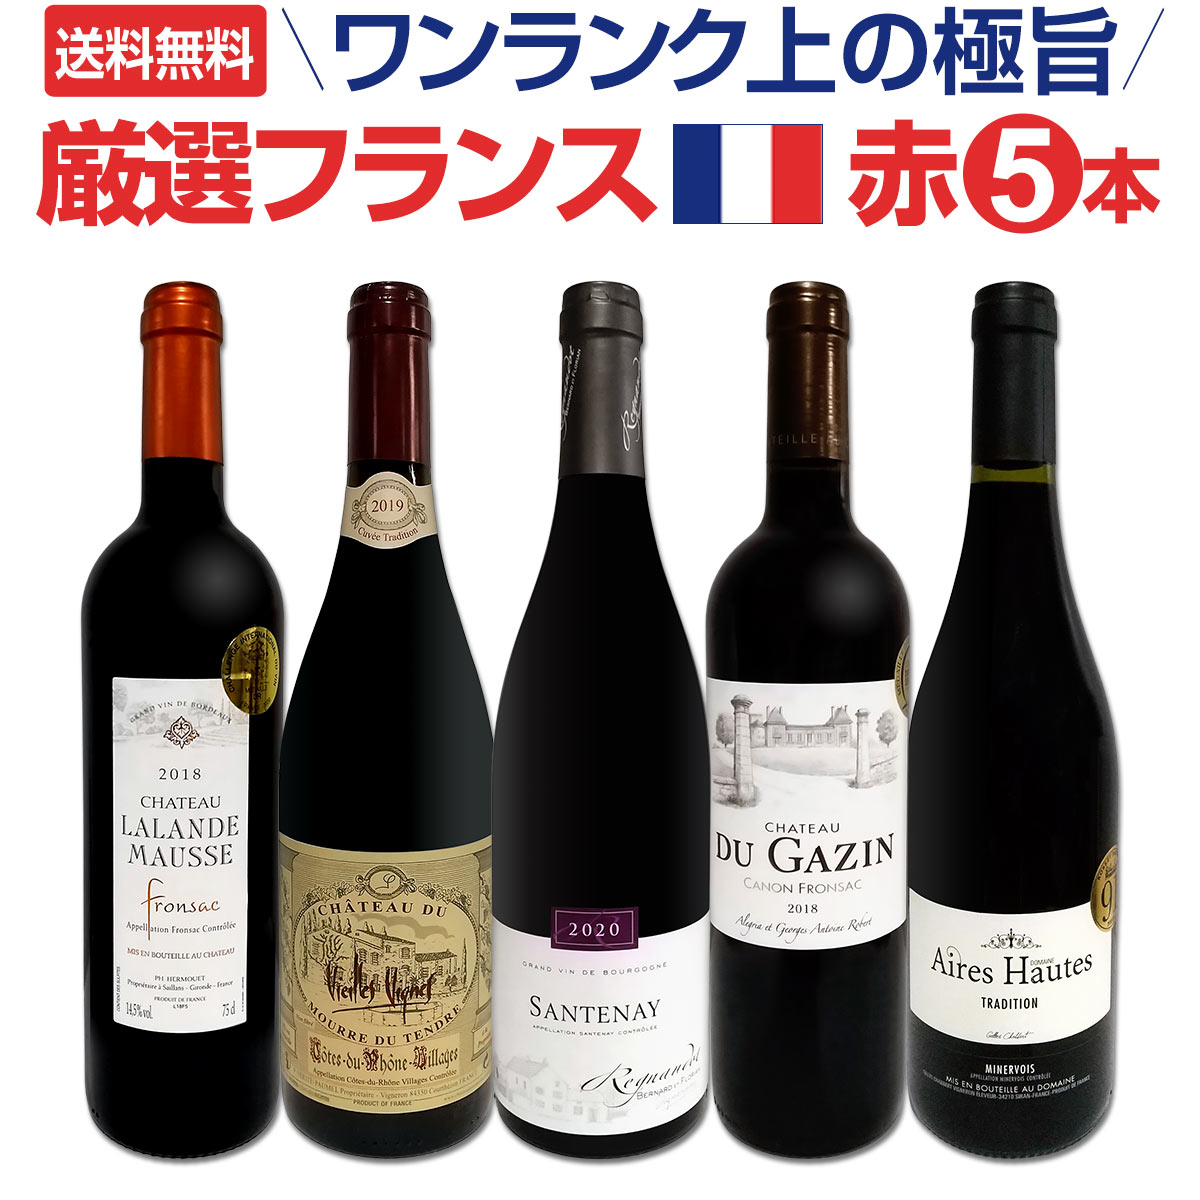 【送料無料】ワンランク上の厳選極旨フランス赤ワイン5本セット!!